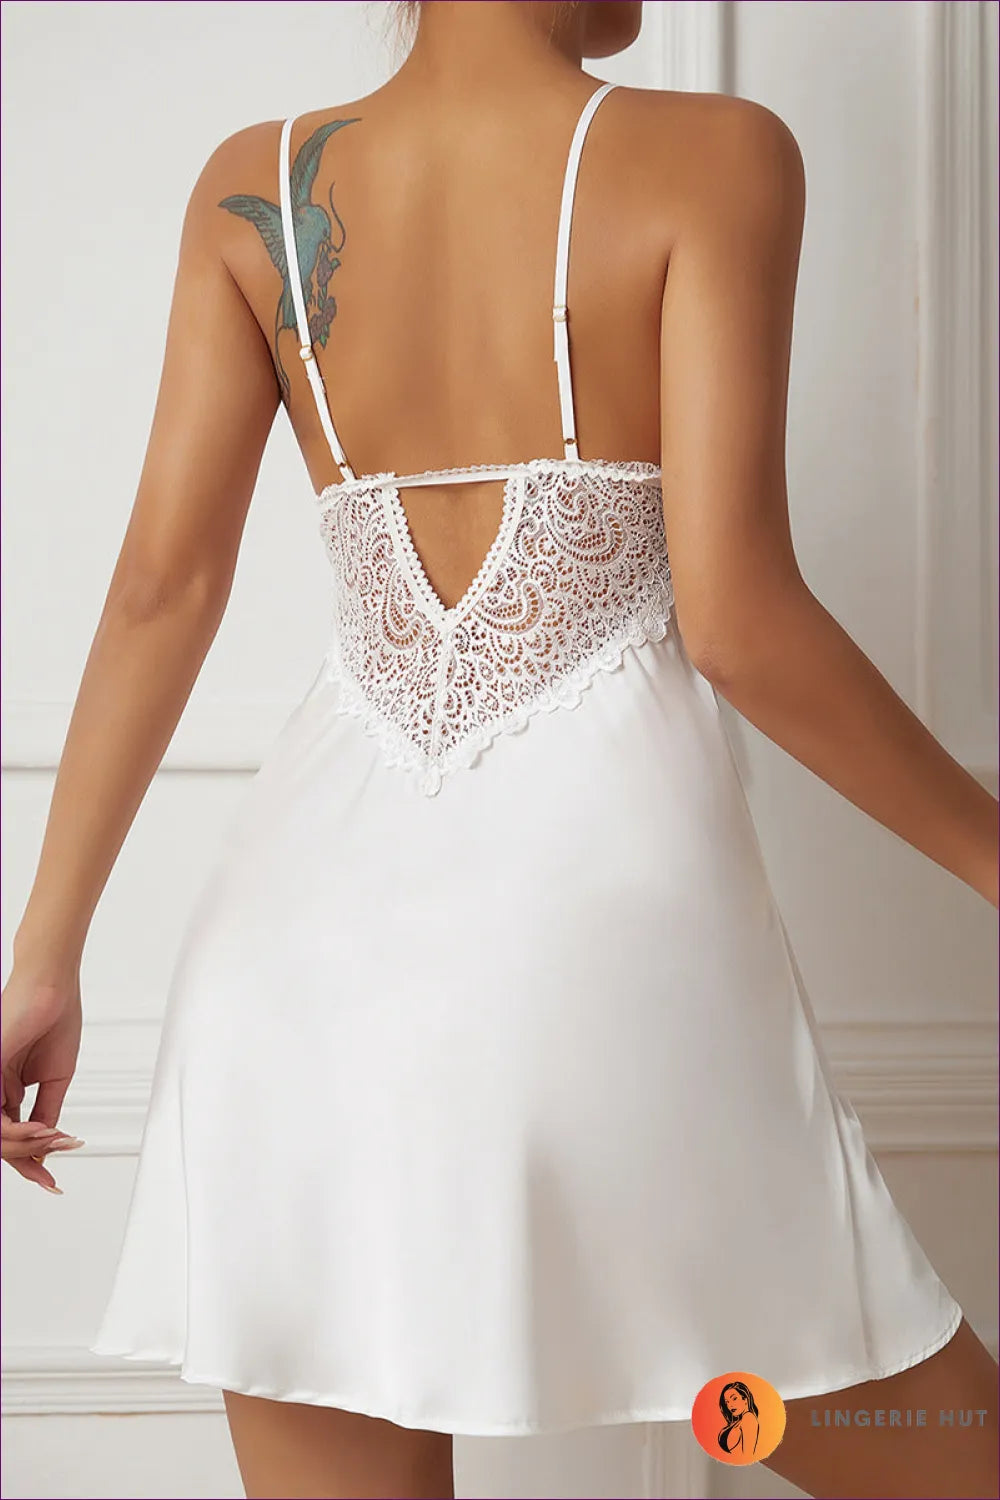 Elegant White Satin Slip Dress - Bridal Lingerie